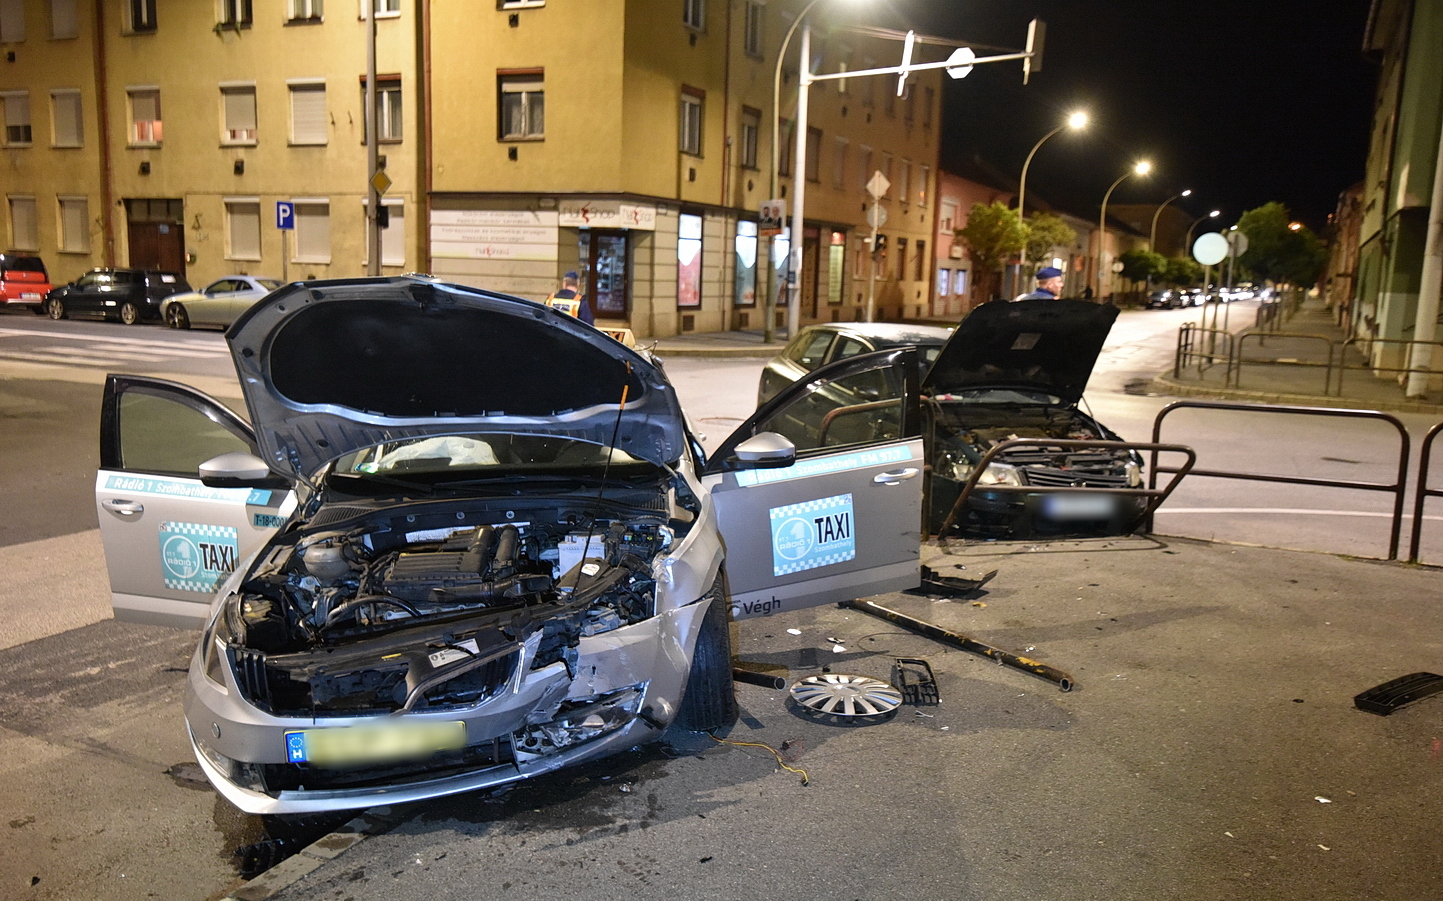 Fiat hajtott Skoda taxinak Szombathelyen - hárman megsérültek Fotó: Tánczos Mihály